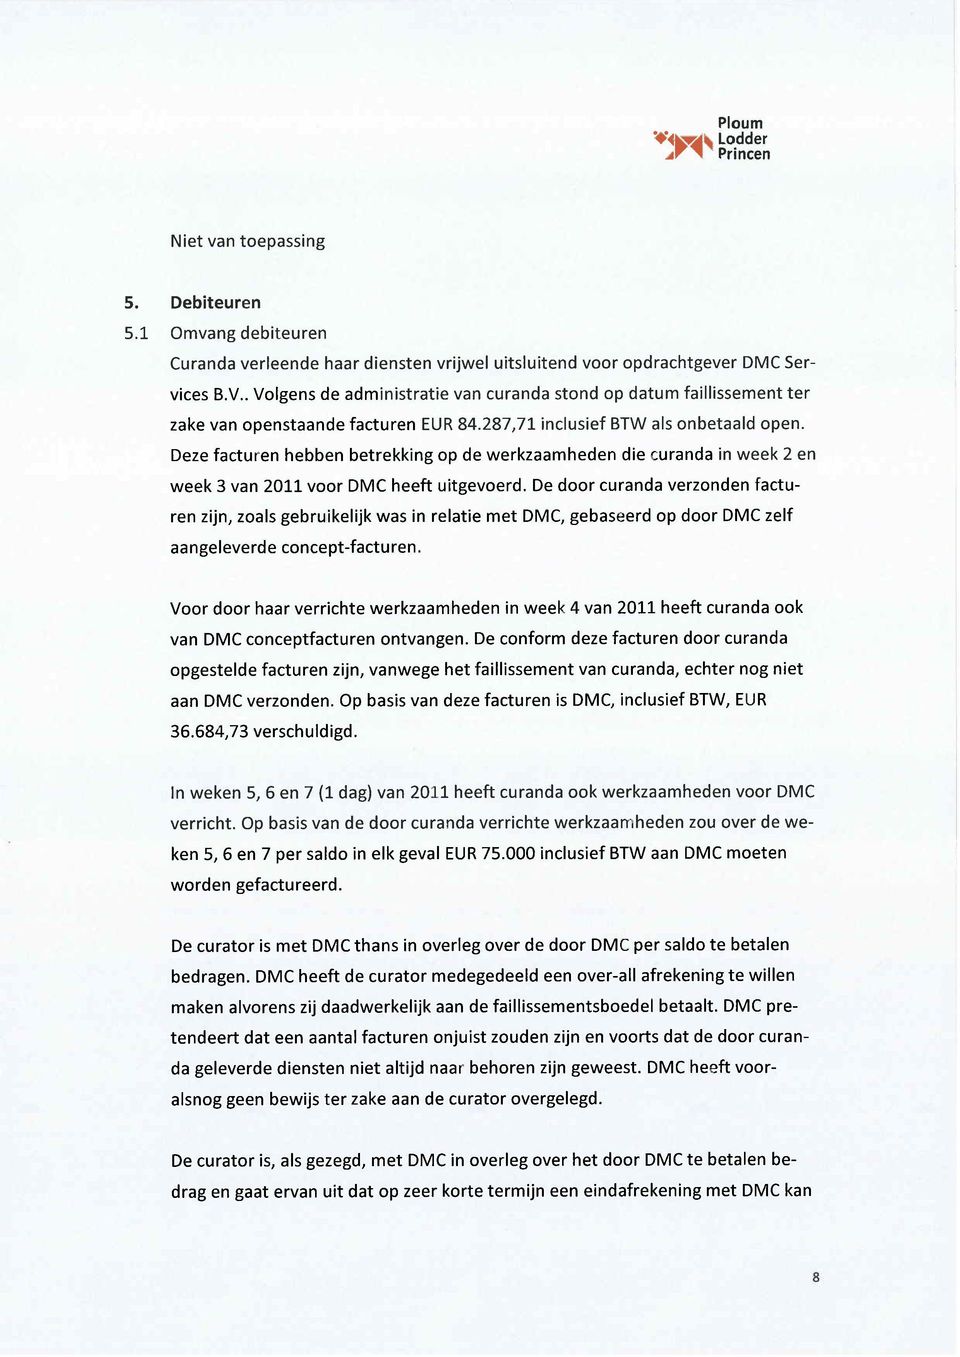 Deze facturen hebben betrekking op de werkzaamheden die curanda in week 2 en week 3 van 2011 voor DMC heeft uitgevoerd.